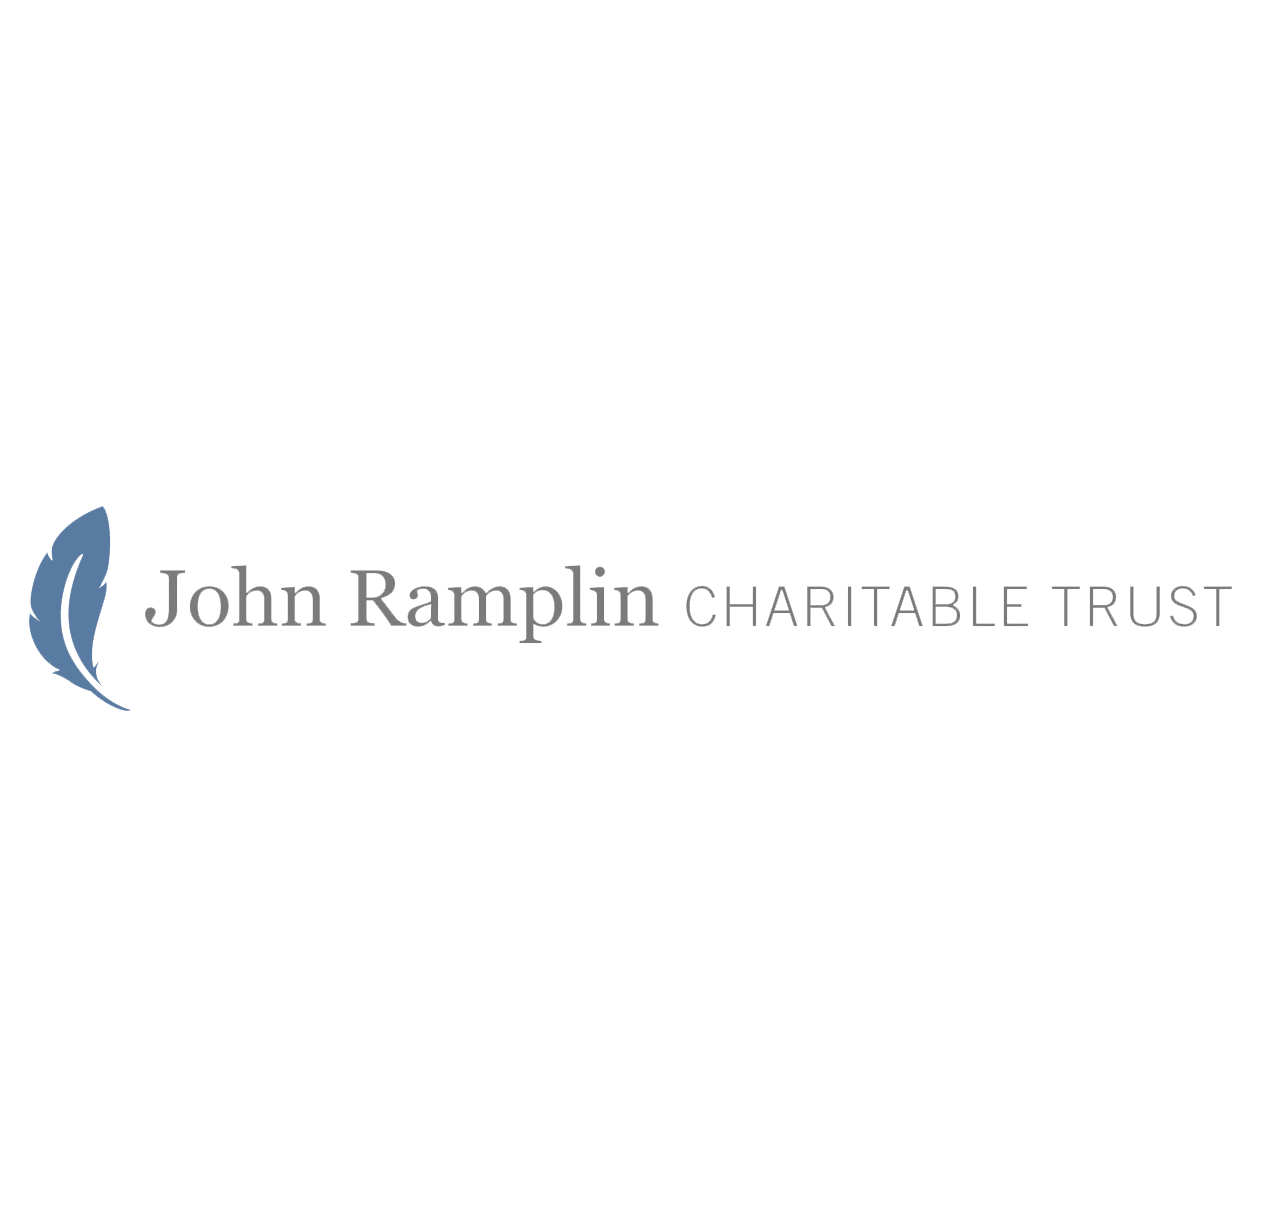 John Ramplin Charitable Trust